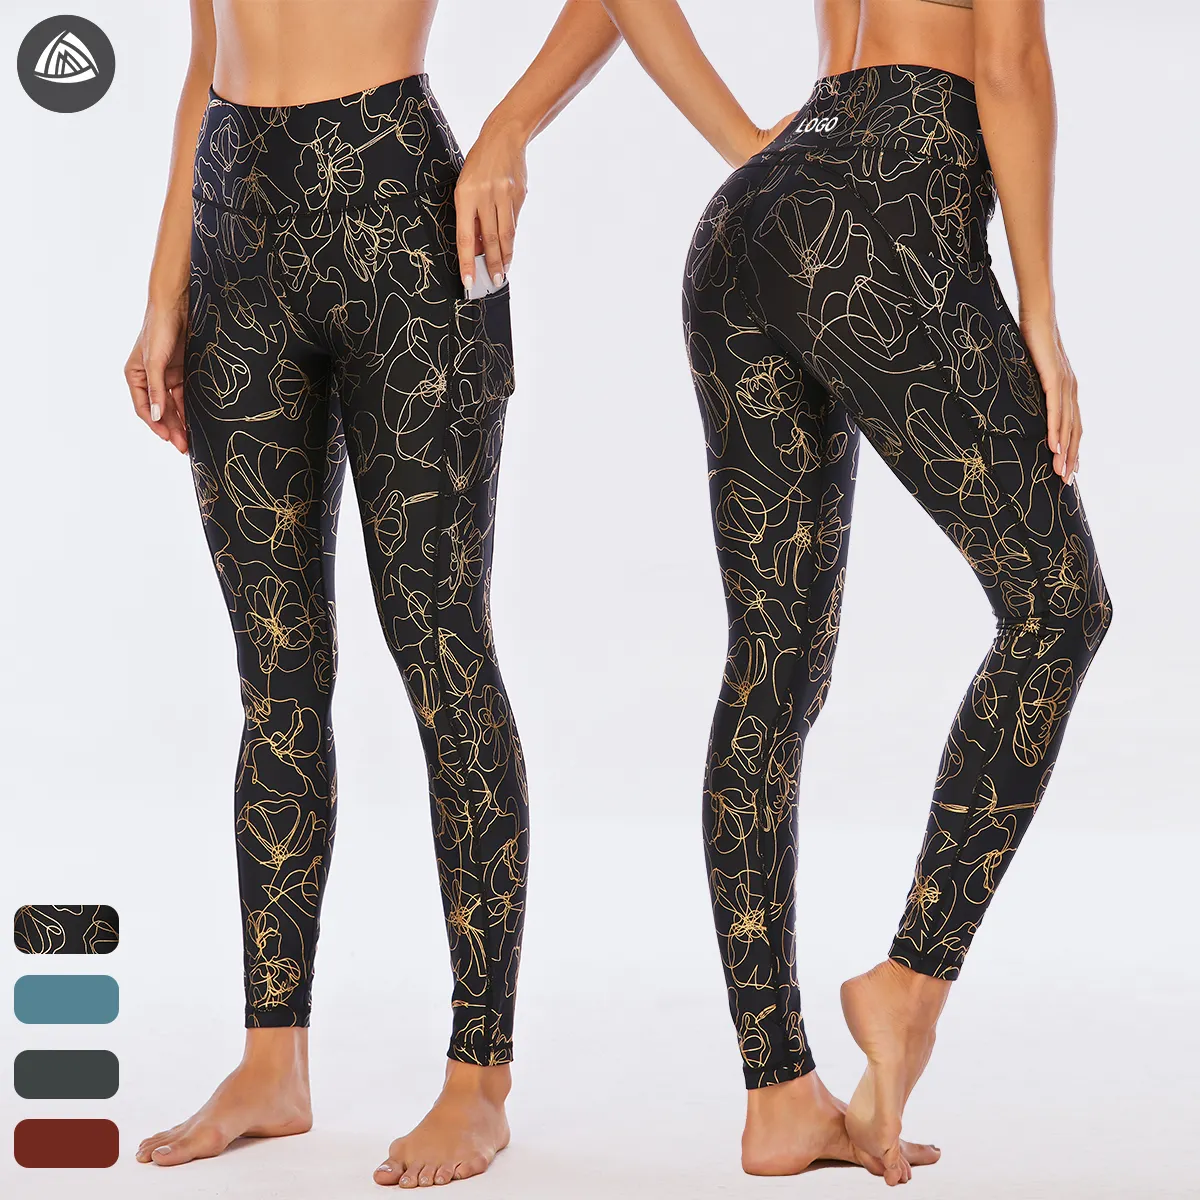 Fabrika yapımı Premium kalite Activewear parlak kadın Yoga pantalonu yüksek bel benzersiz spor Yoga pantolon tayt cep ile